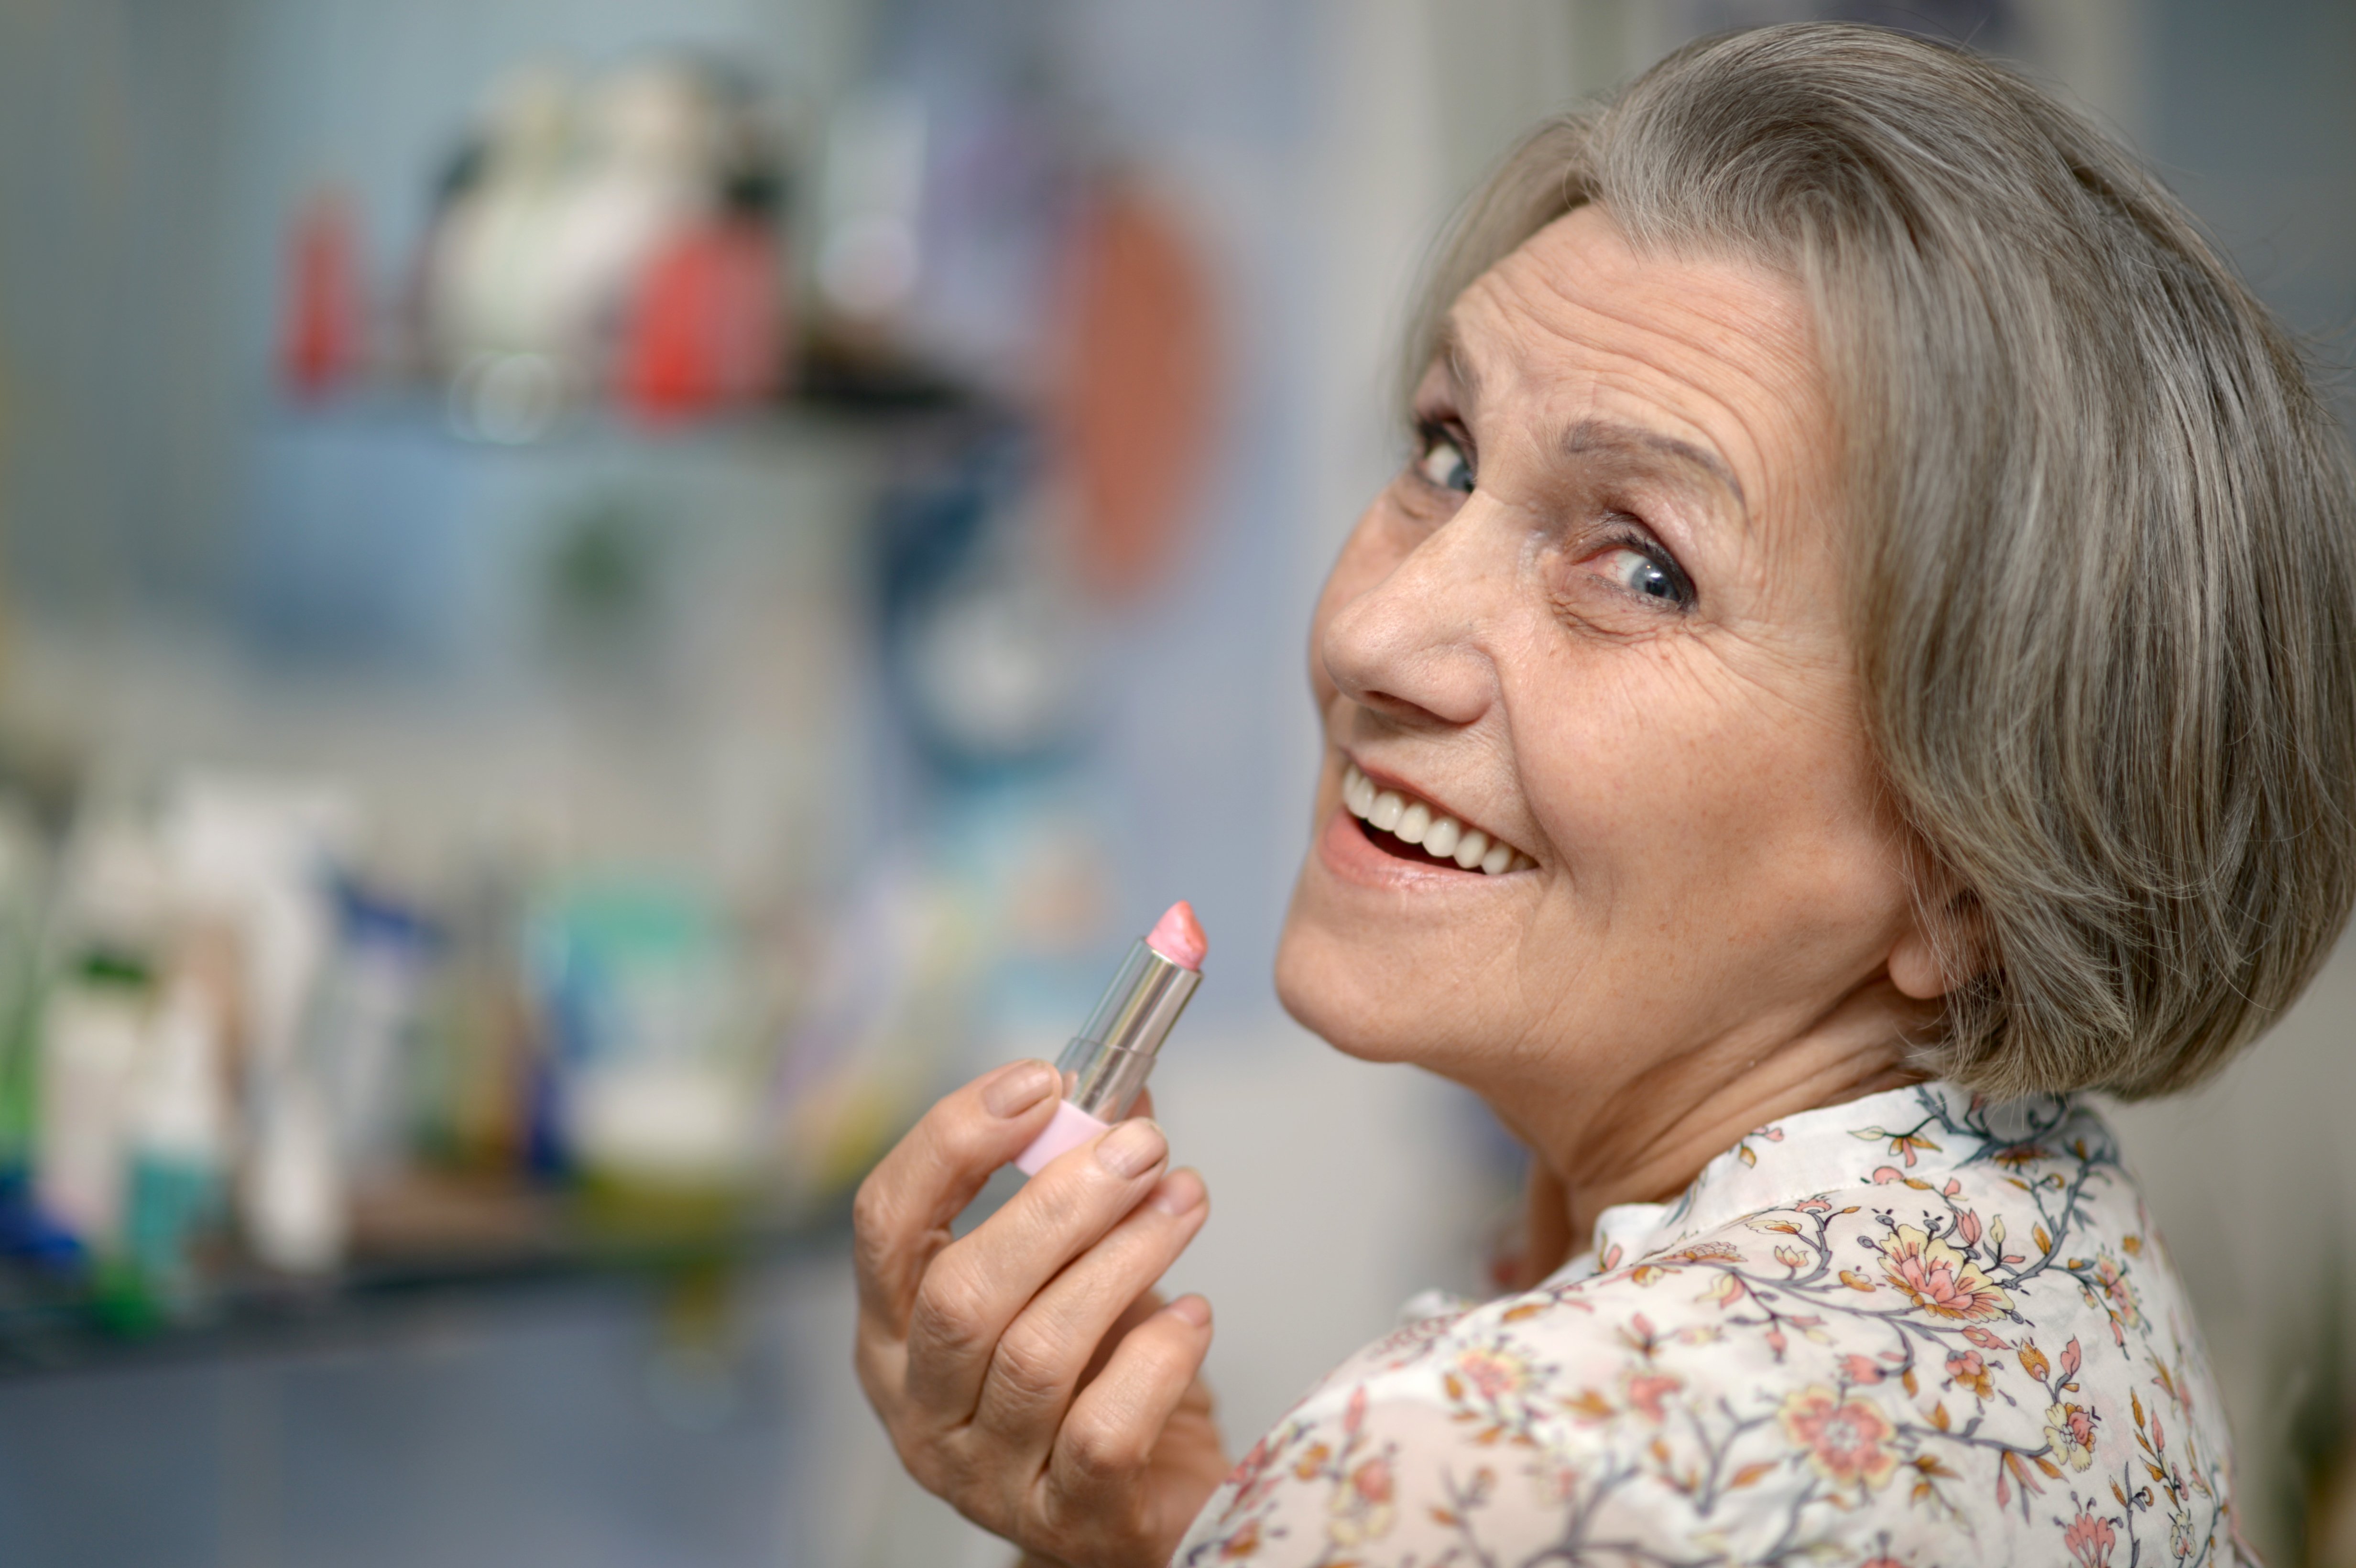 Magnifique portrait d'une femme âgée se maquillant avec du rouge à lèvres. | Photo : Shutterstock